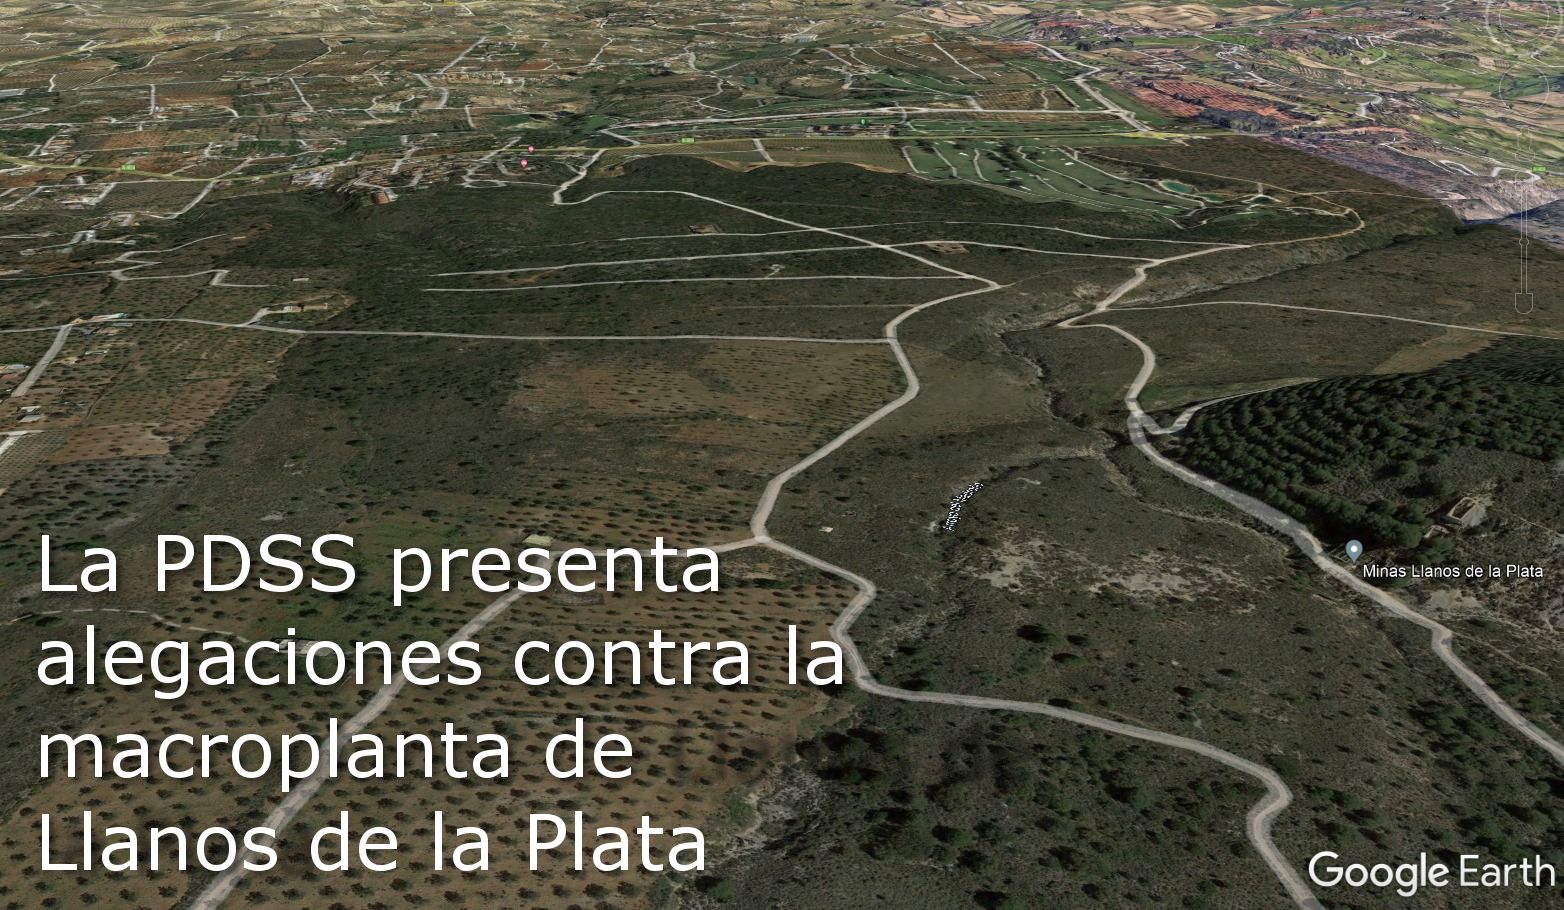 La PDSS presenta alegaciones contra la macroplanta de Llanos de la Plata (Alhaurin de la Torre)